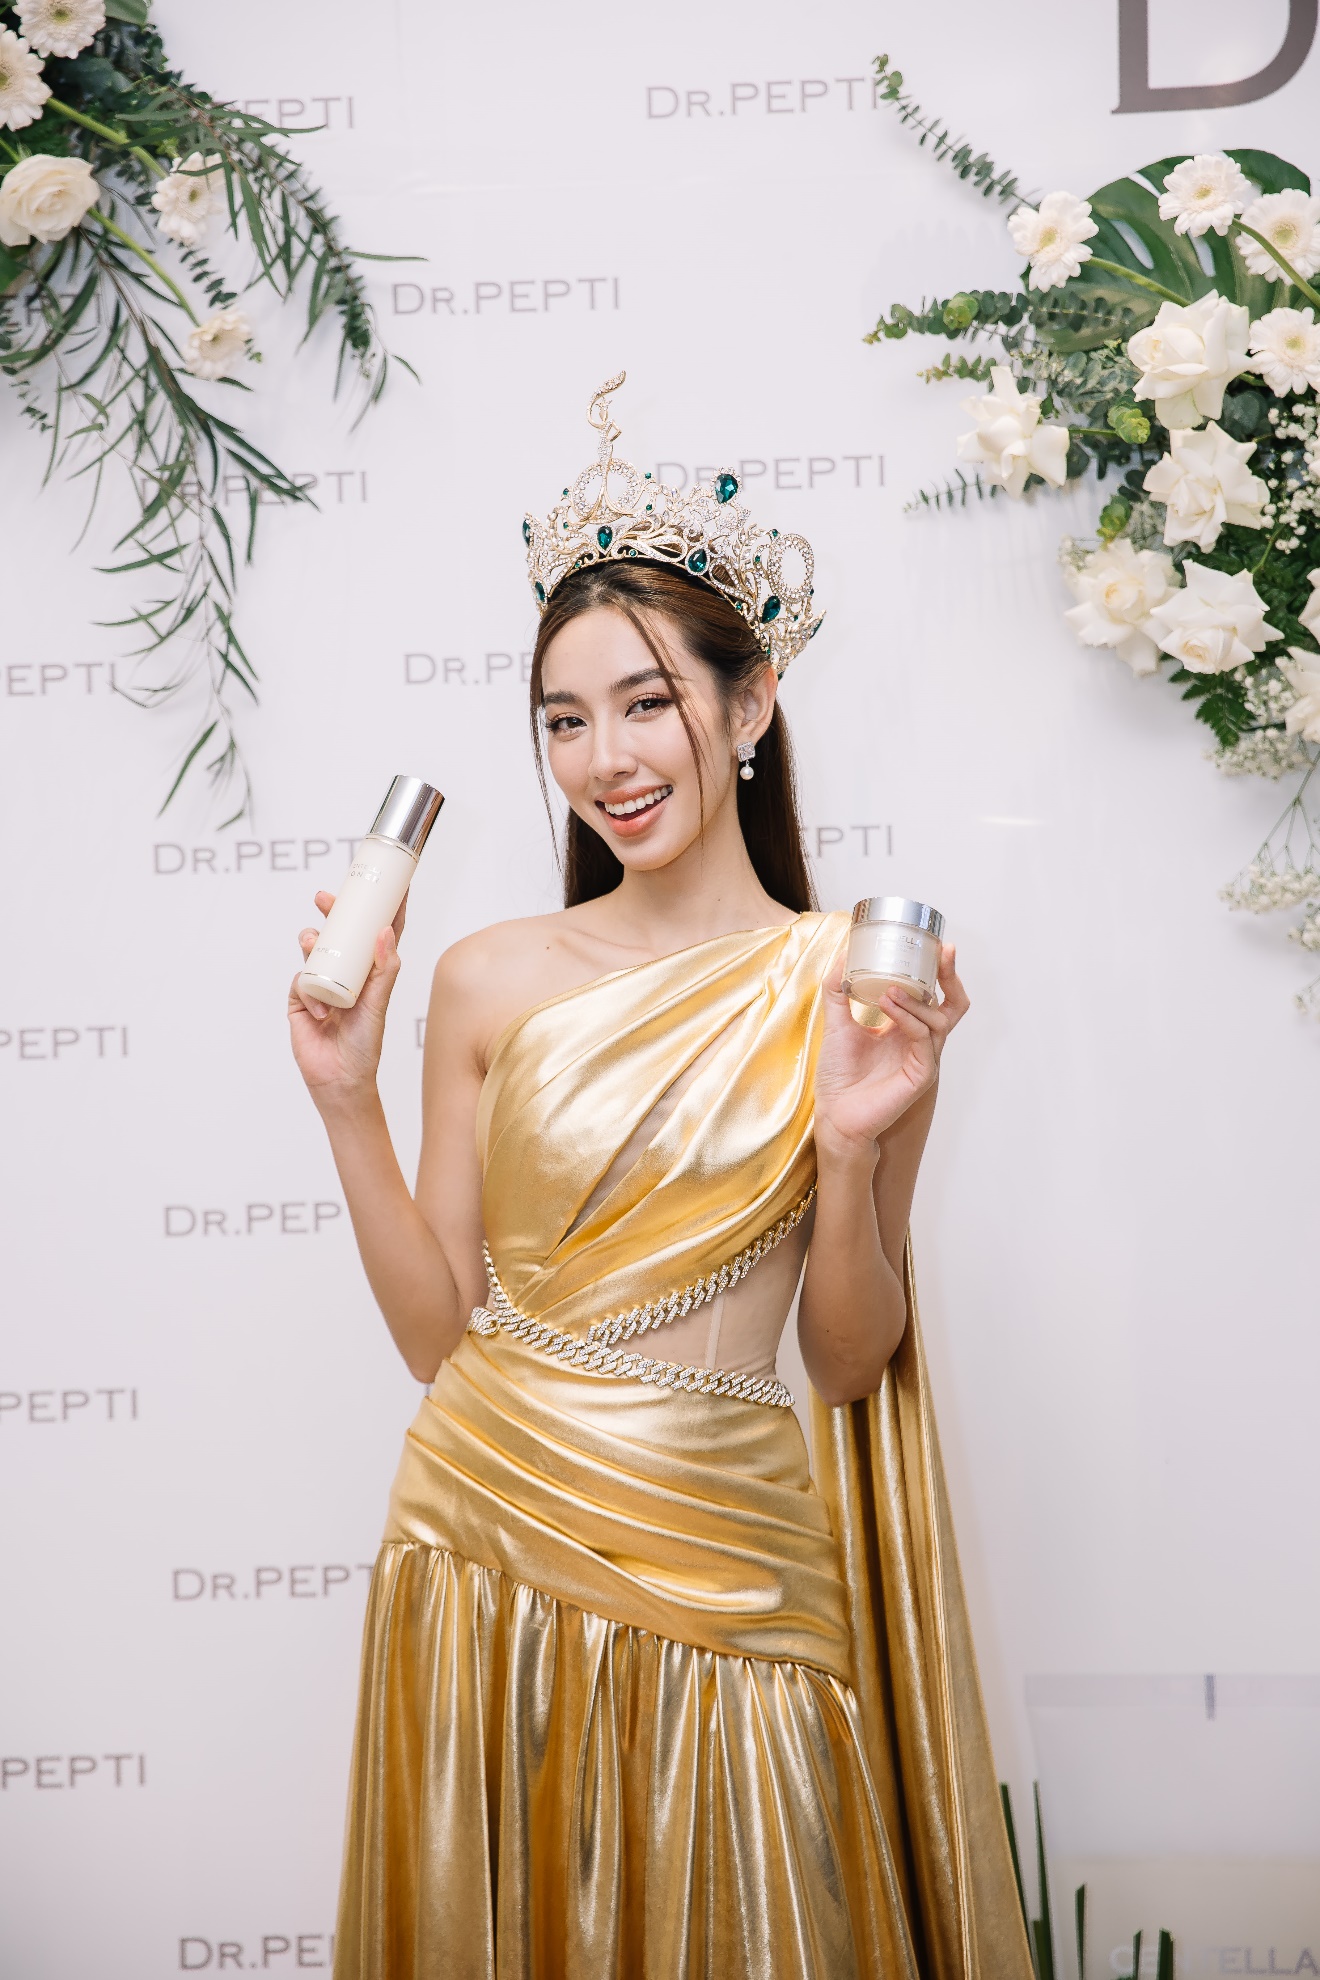 Hoa hậu Thùy Tiên đẹp rạng ngời trong sự kiện ra mắt sản phẩm của Dr.Pepti - Ảnh 2.